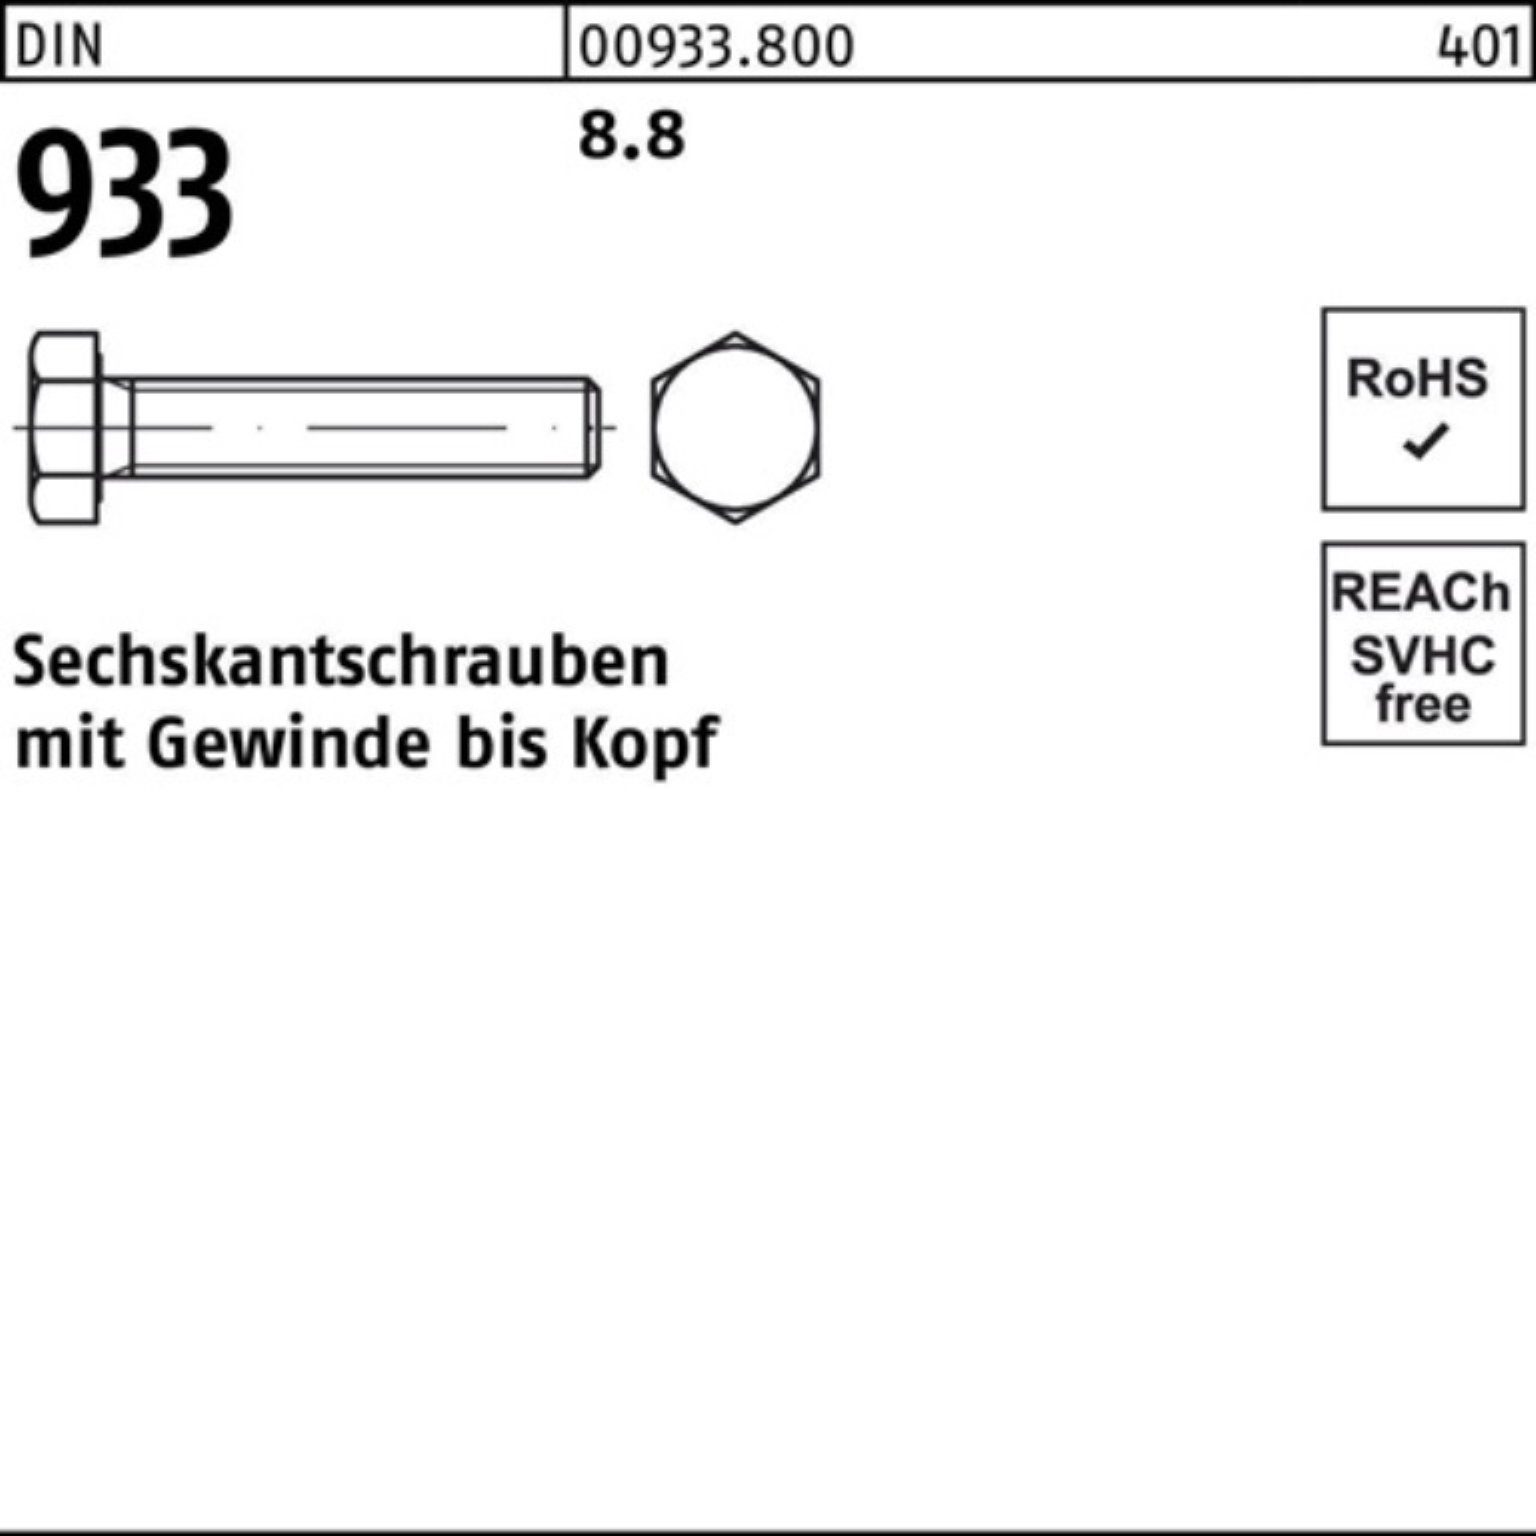 Sechskantschraube 8.8 DIN Stück 933 100er Reyher M22x 10 100 933 VG Pack DIN Sechskantschraube